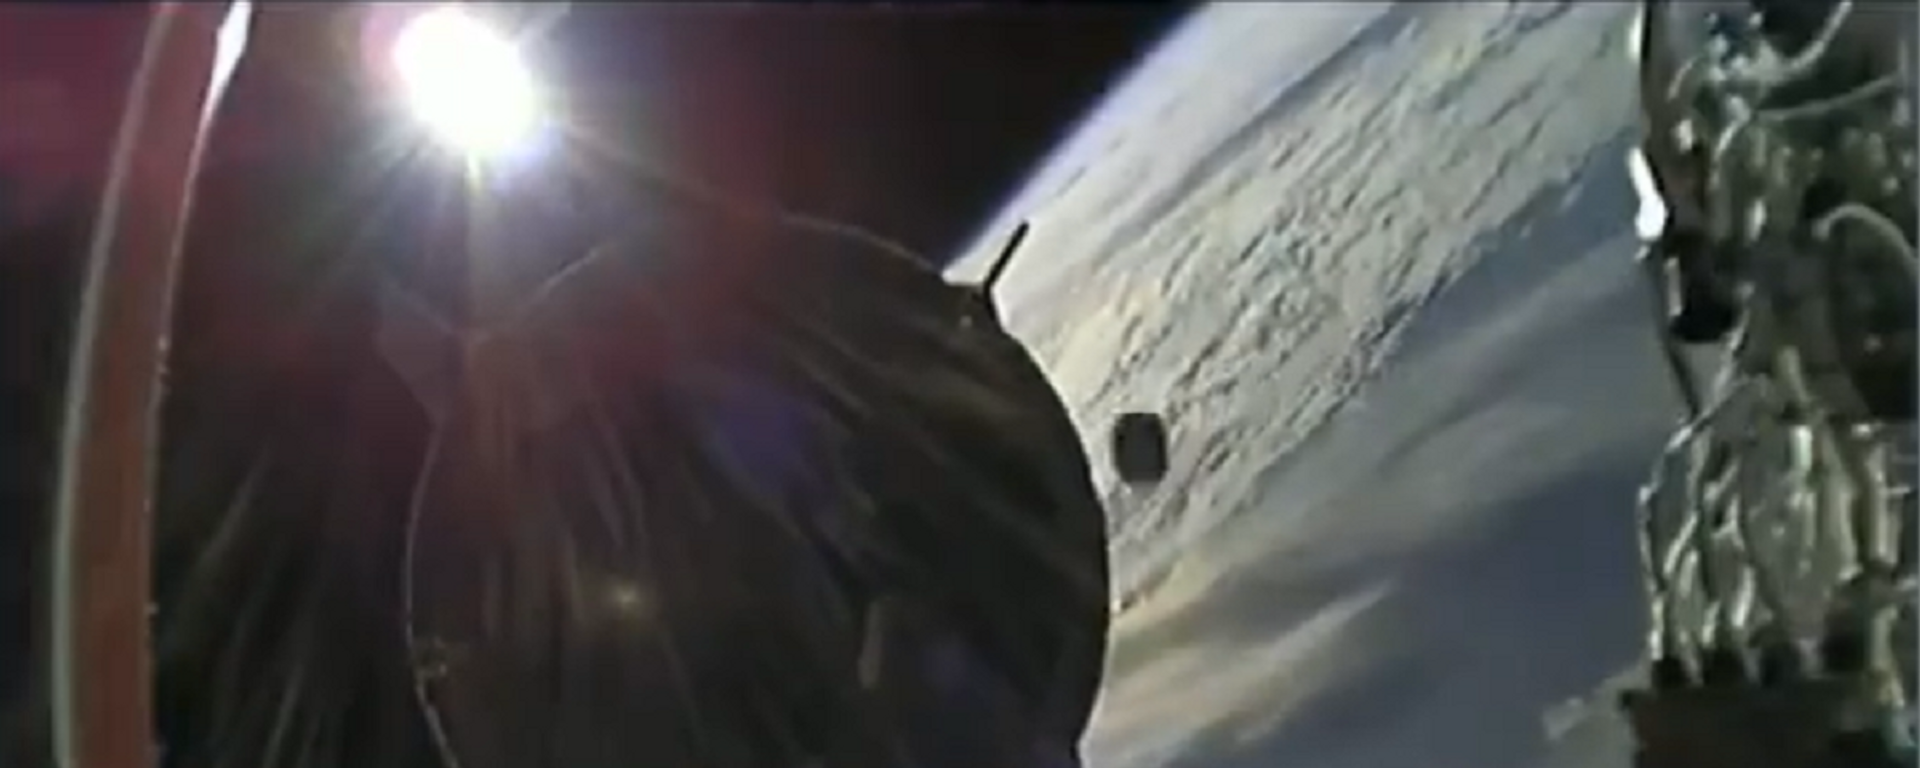 Un objeto no identificado casi choca contra la Crew Dragon de SpaceX  - Sputnik Mundo, 1920, 27.04.2021